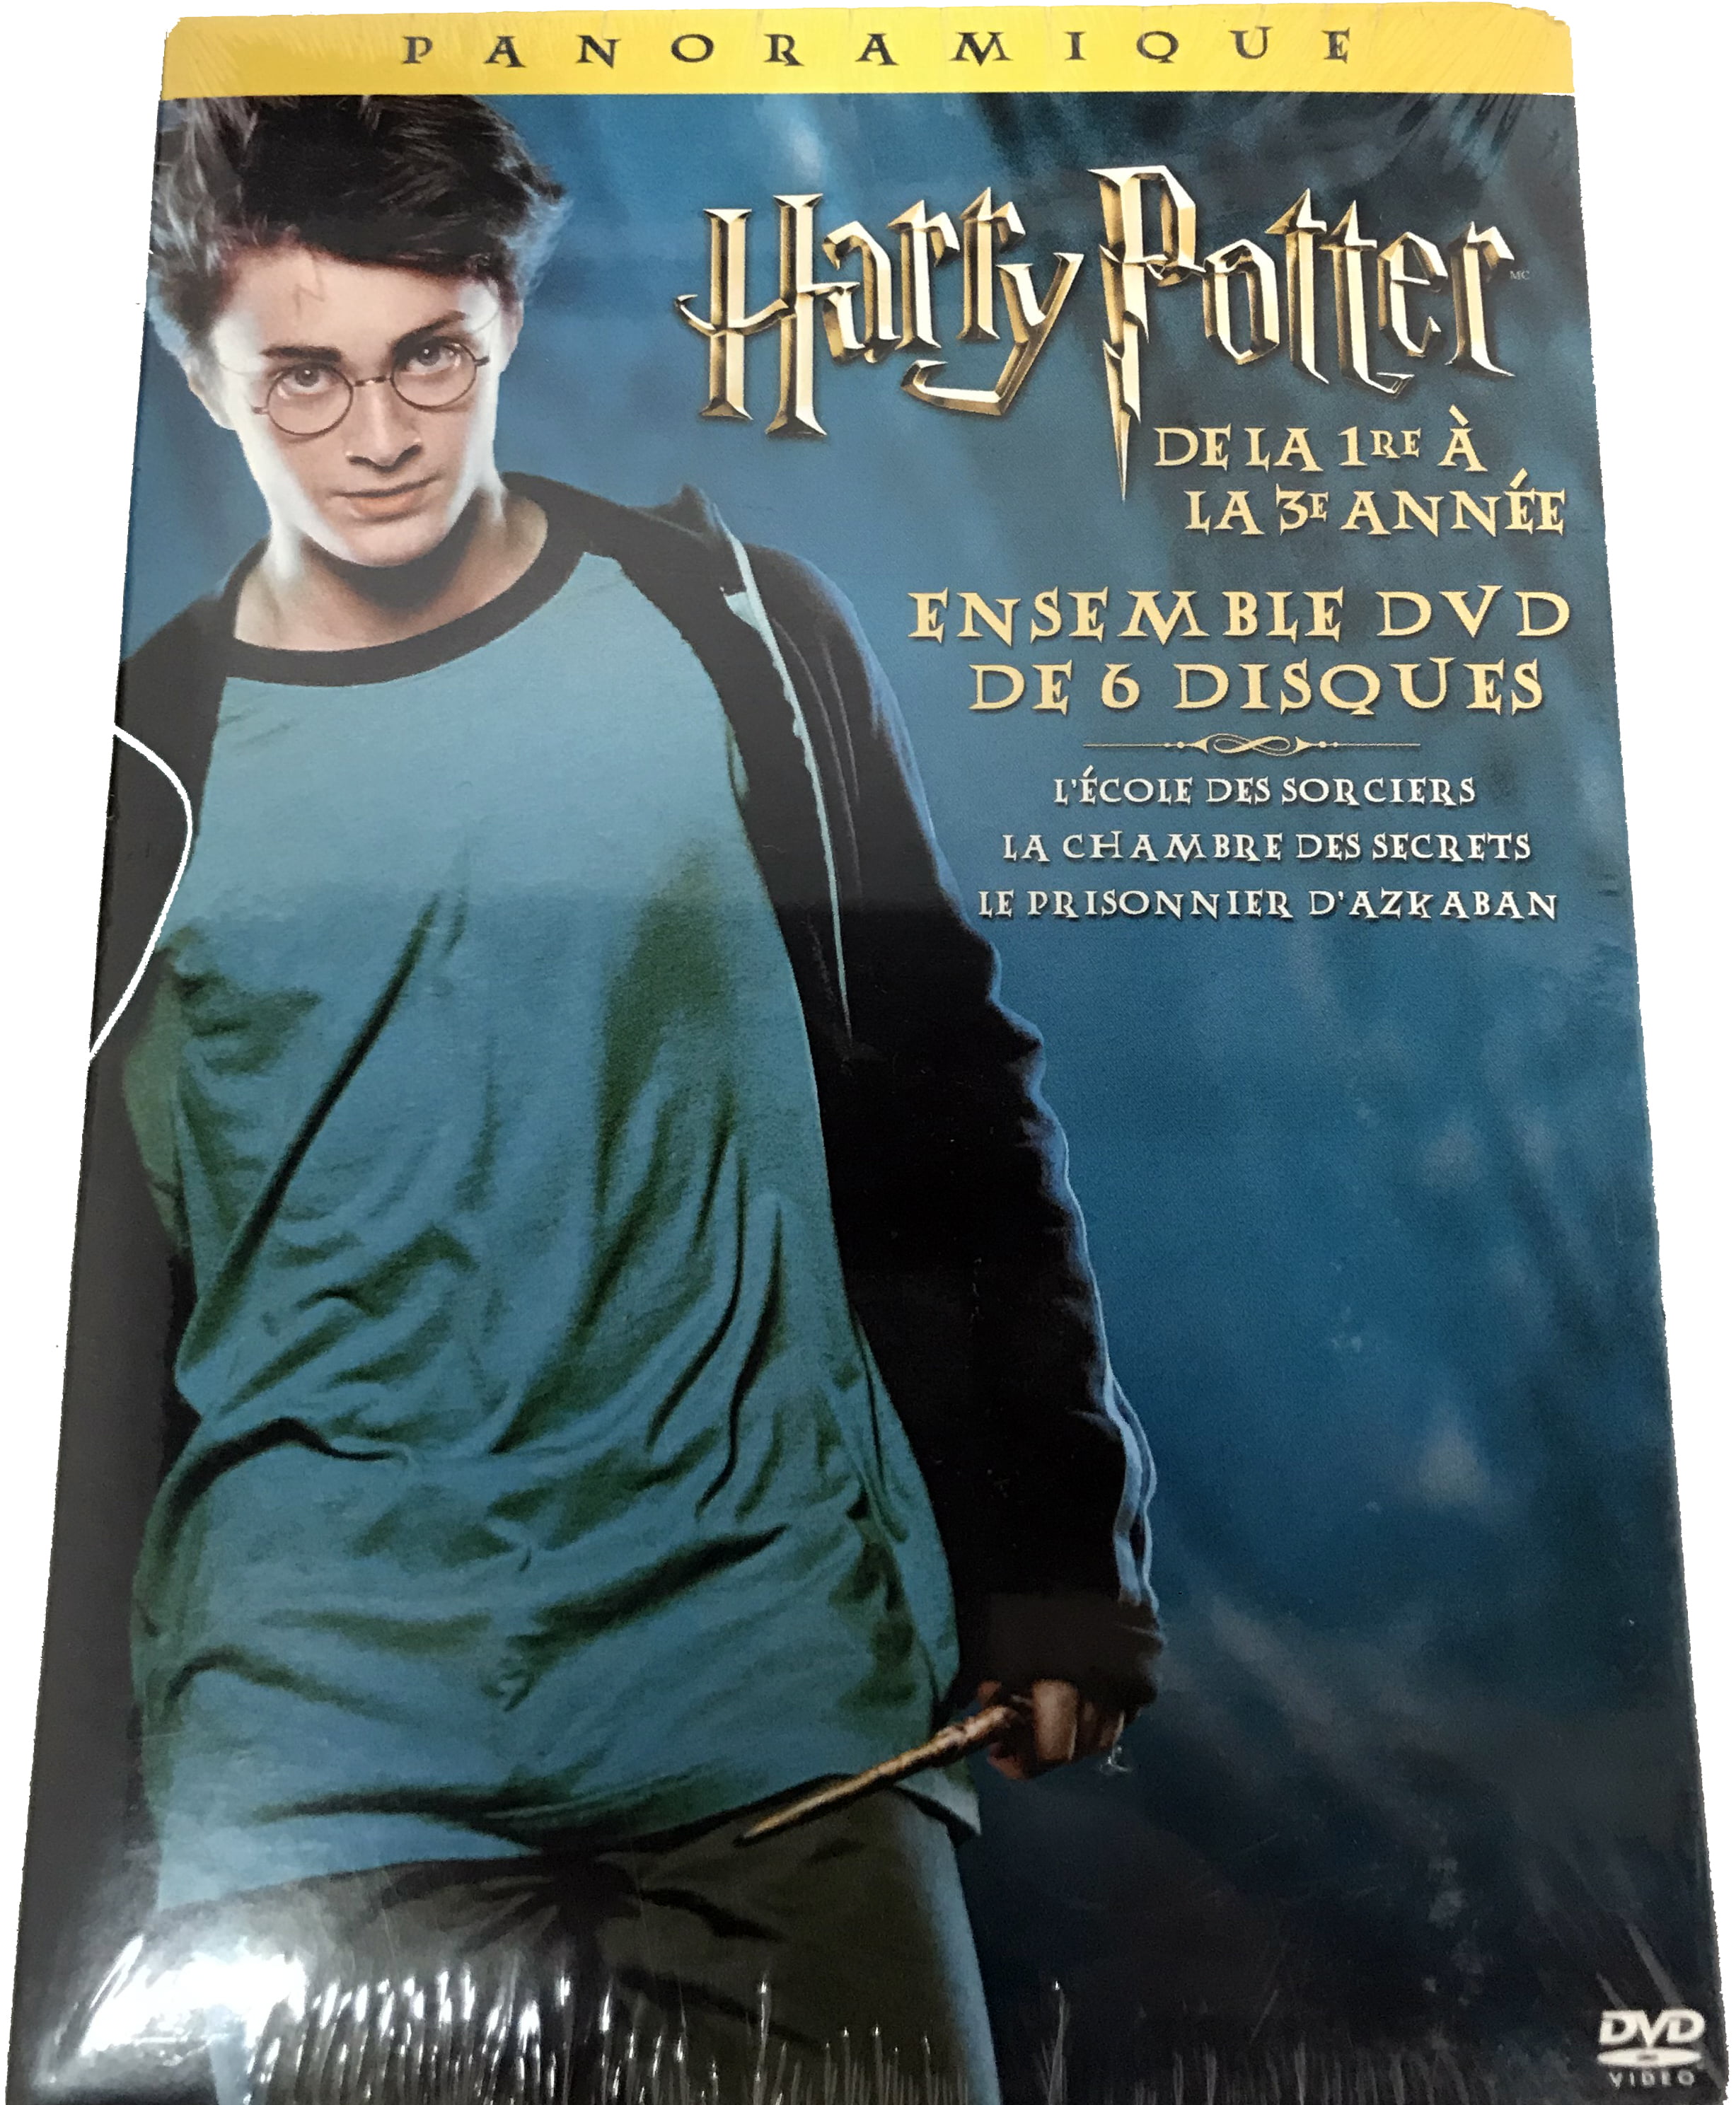 Harry Potter et la Chambre des Secrets (French Edition)